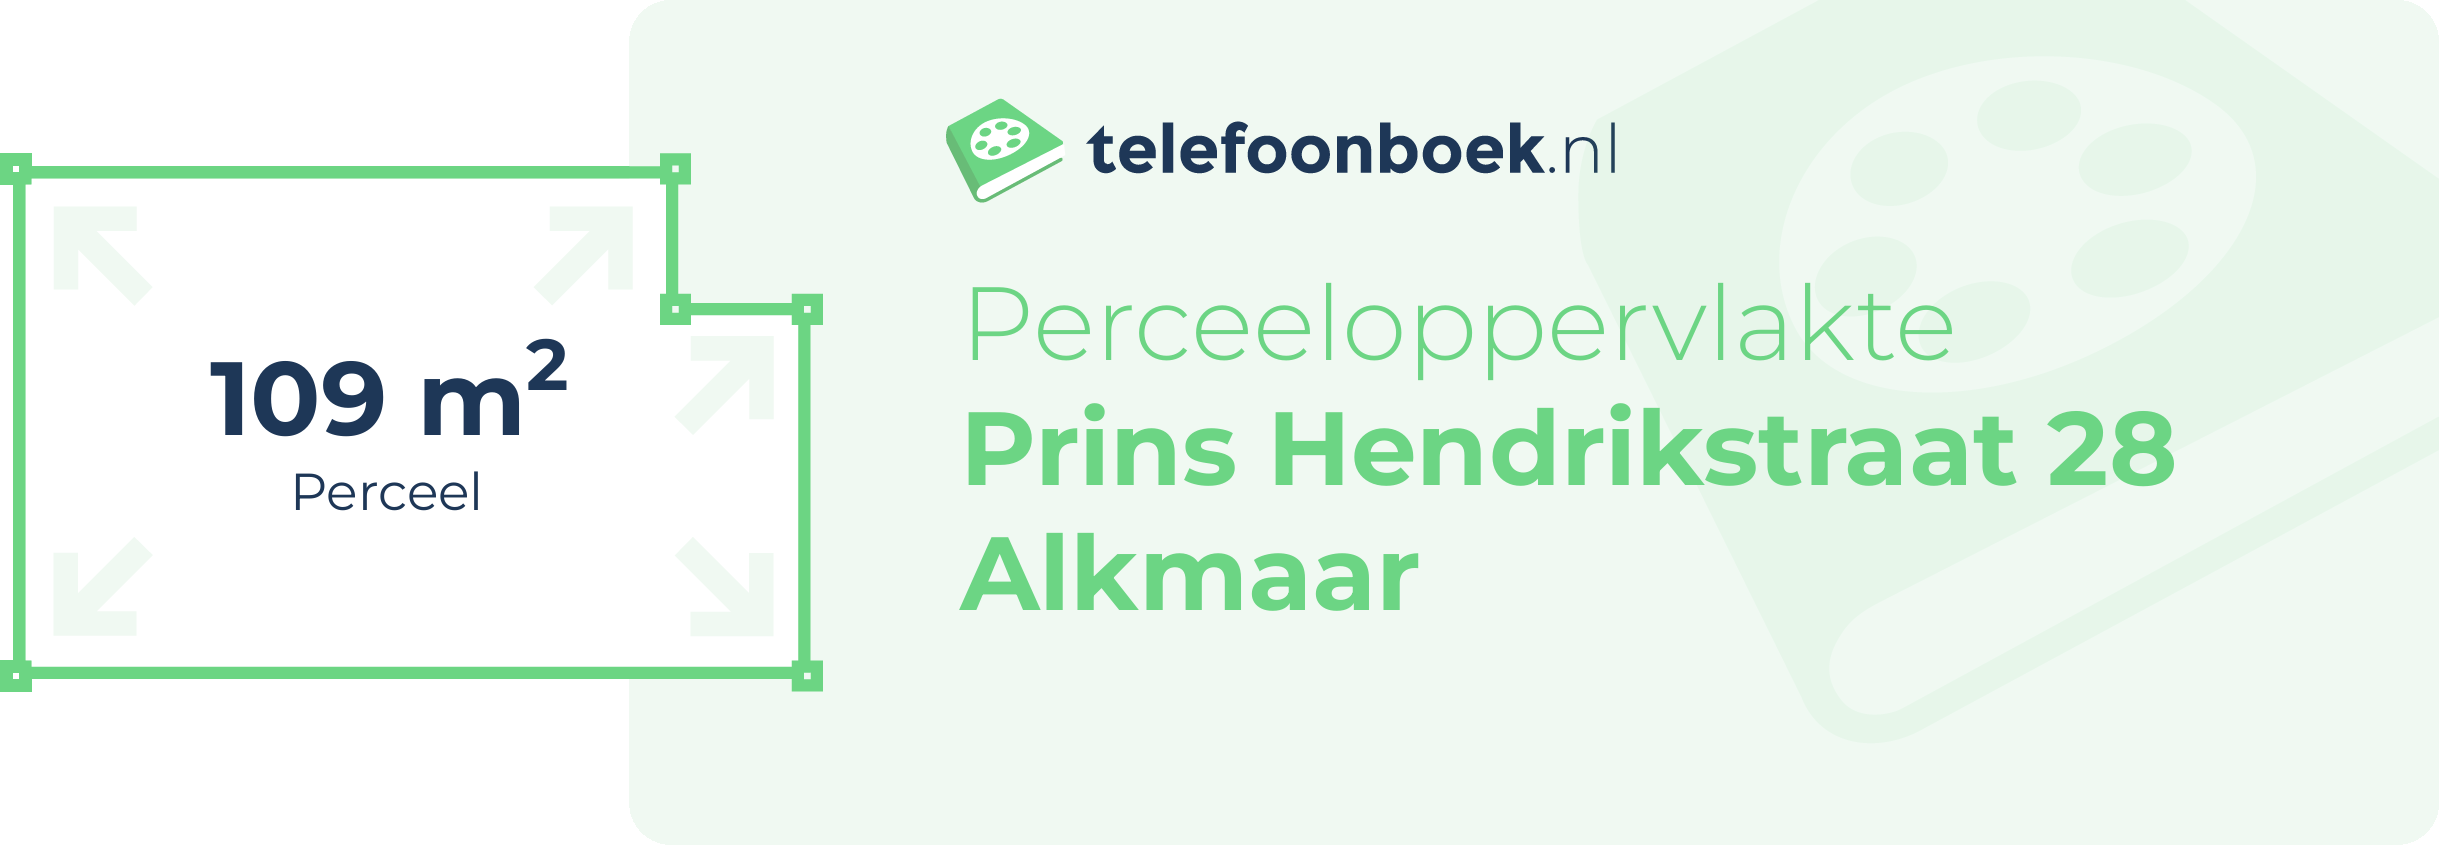 Perceeloppervlakte Prins Hendrikstraat 28 Alkmaar